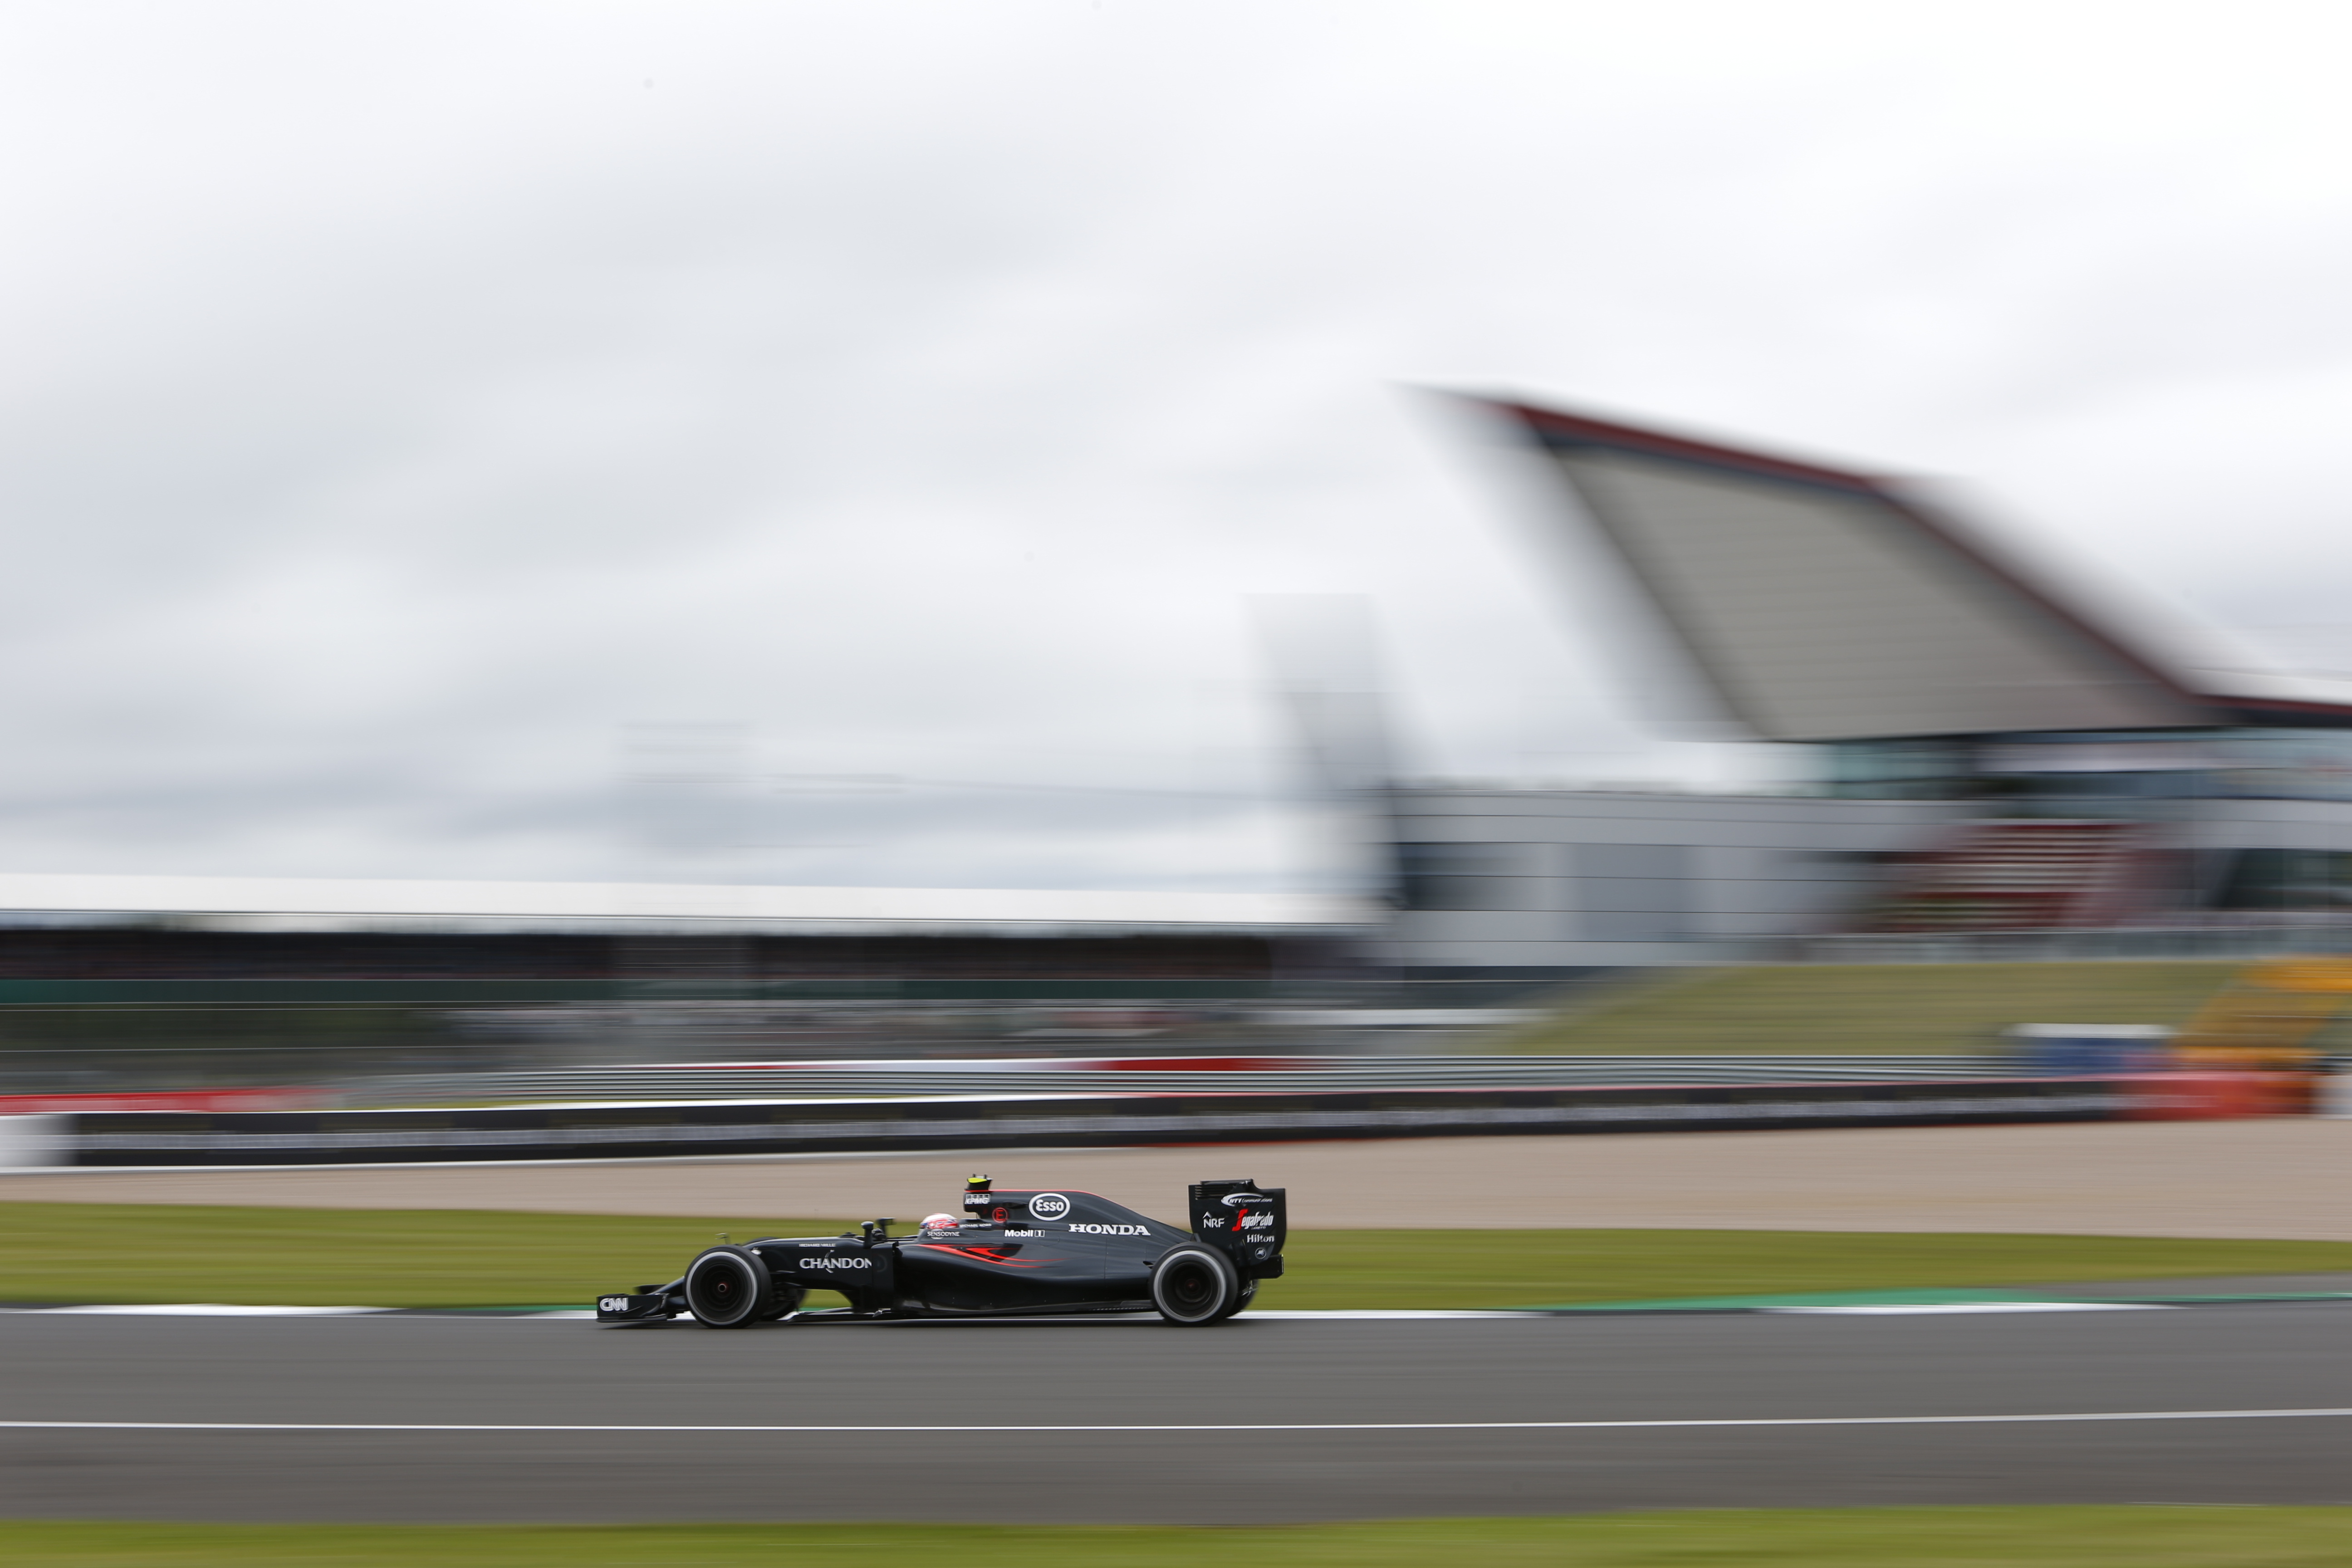 Jenson Button at the 2016 British Grand Prix